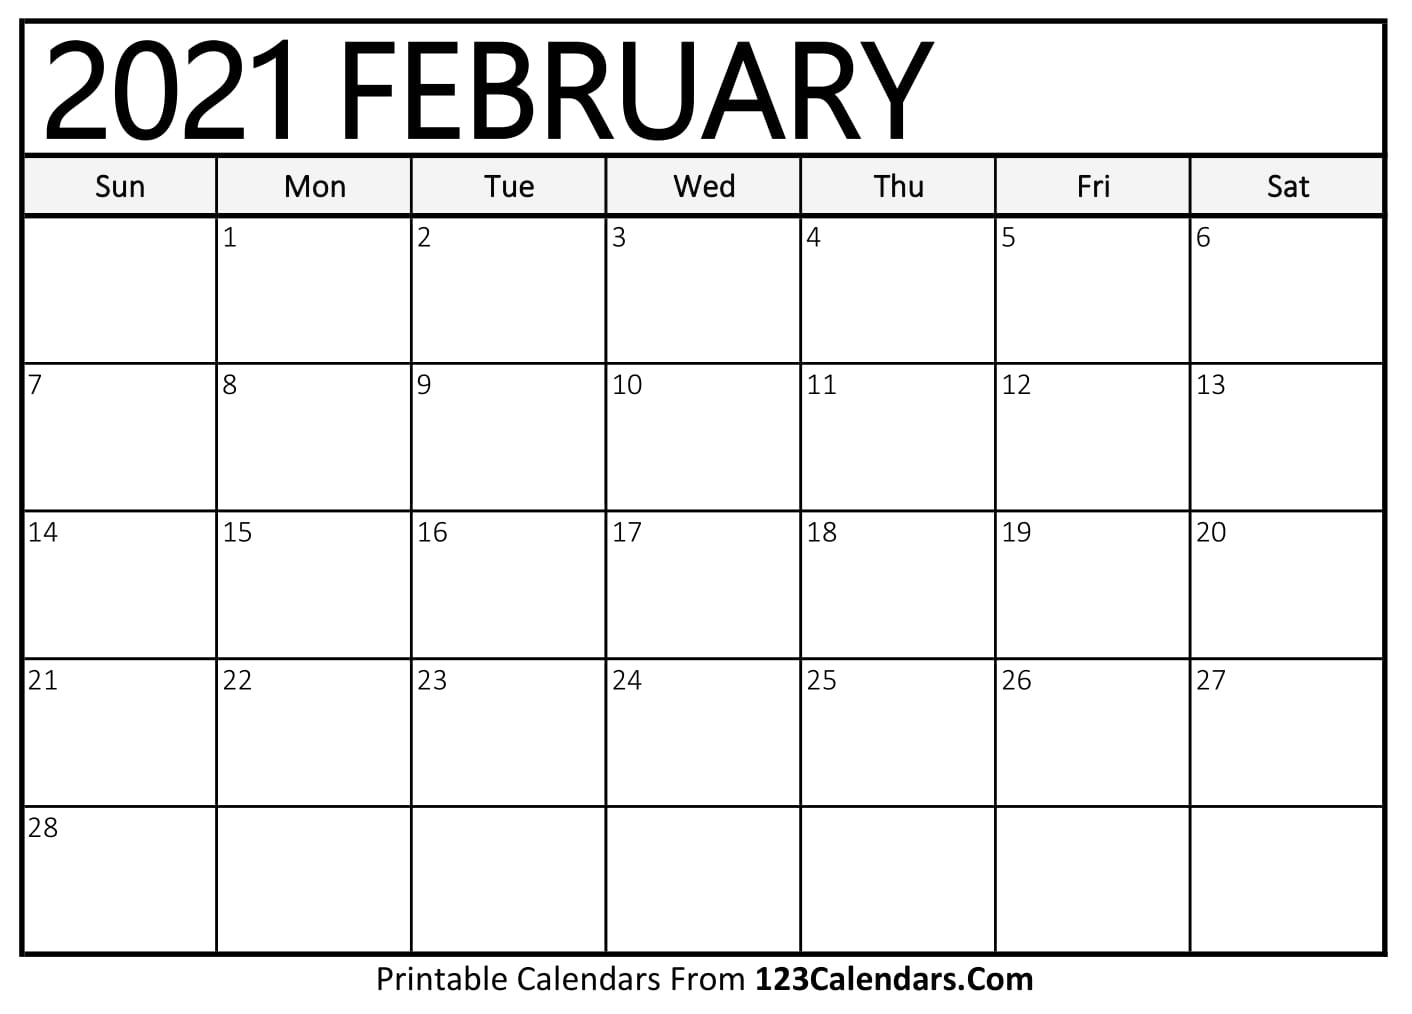 Printable February 2021 Calendar Templates | 123Calendars.com